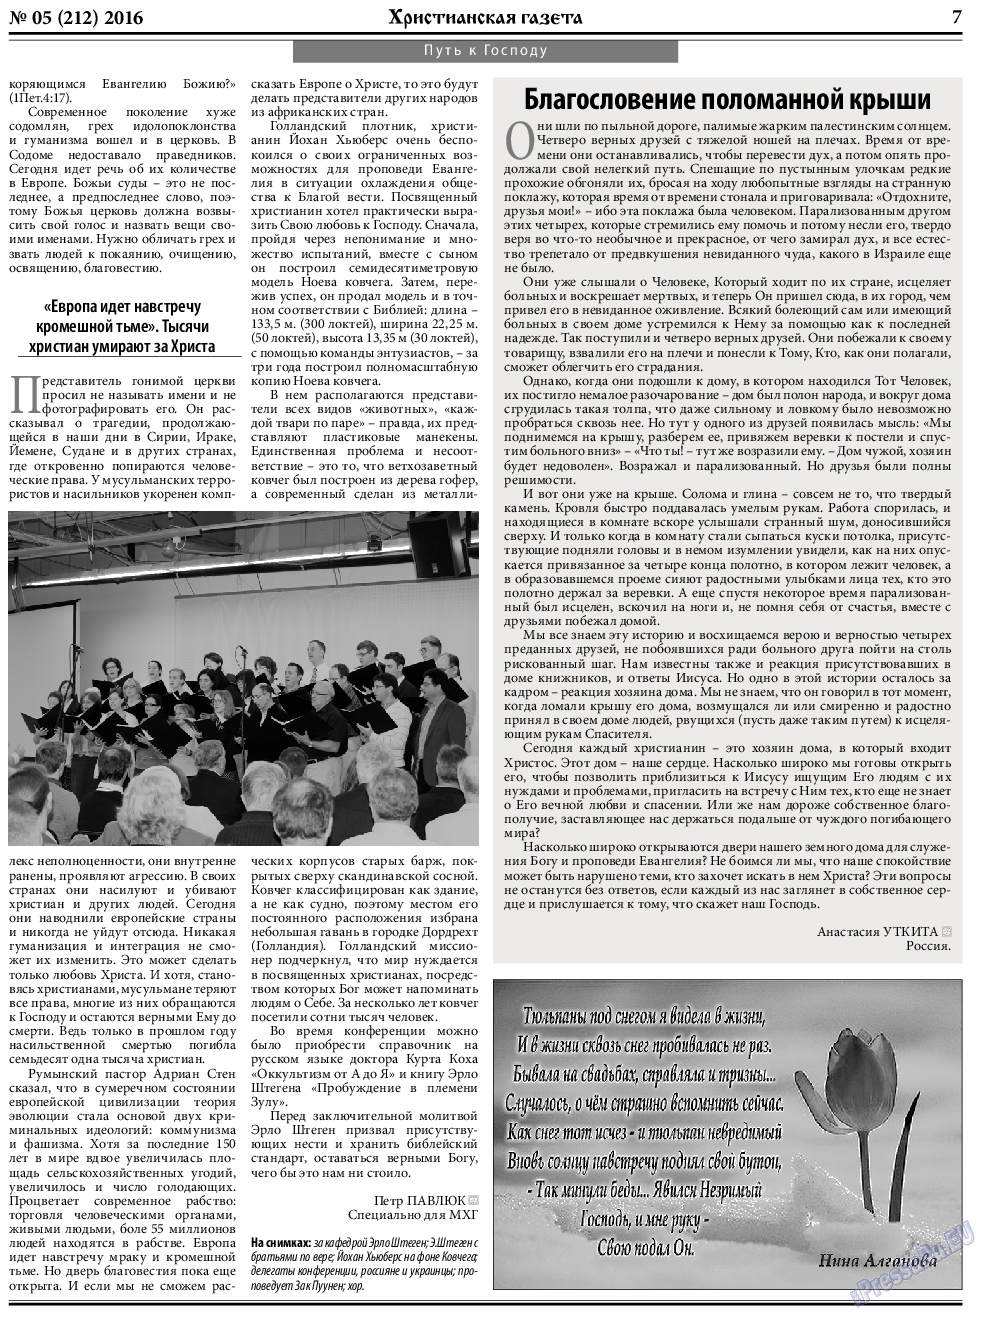 Христианская газета (газета). 2016 год, номер 5, стр. 7